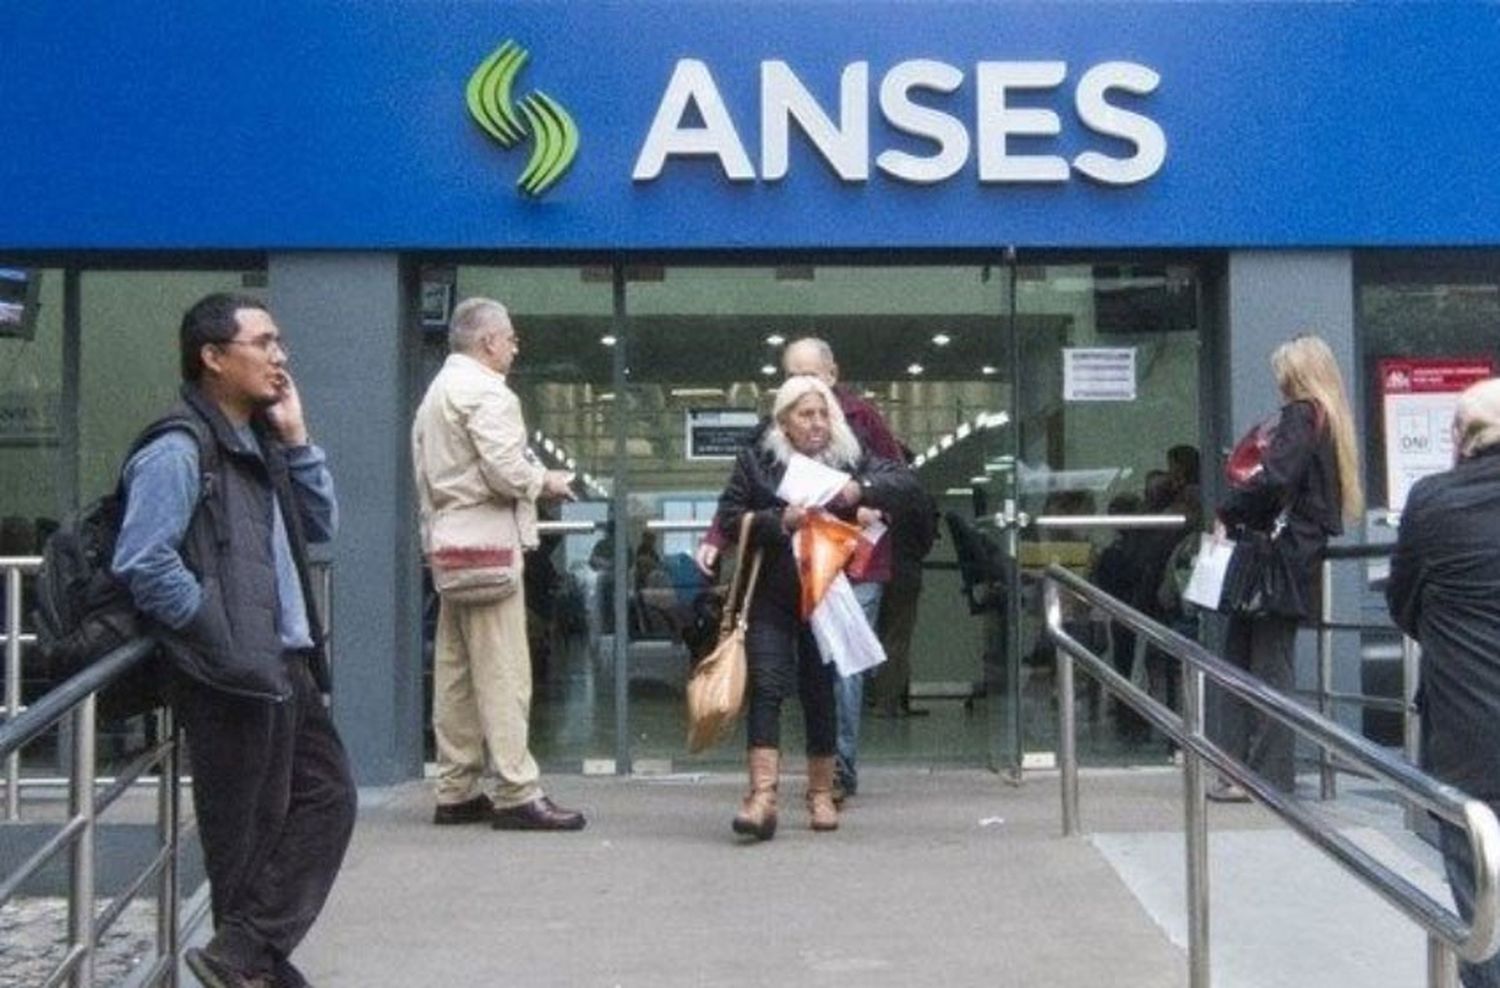 Jubilados que deben dinero a prestamistas toman créditos en Anses a tasas del 50%